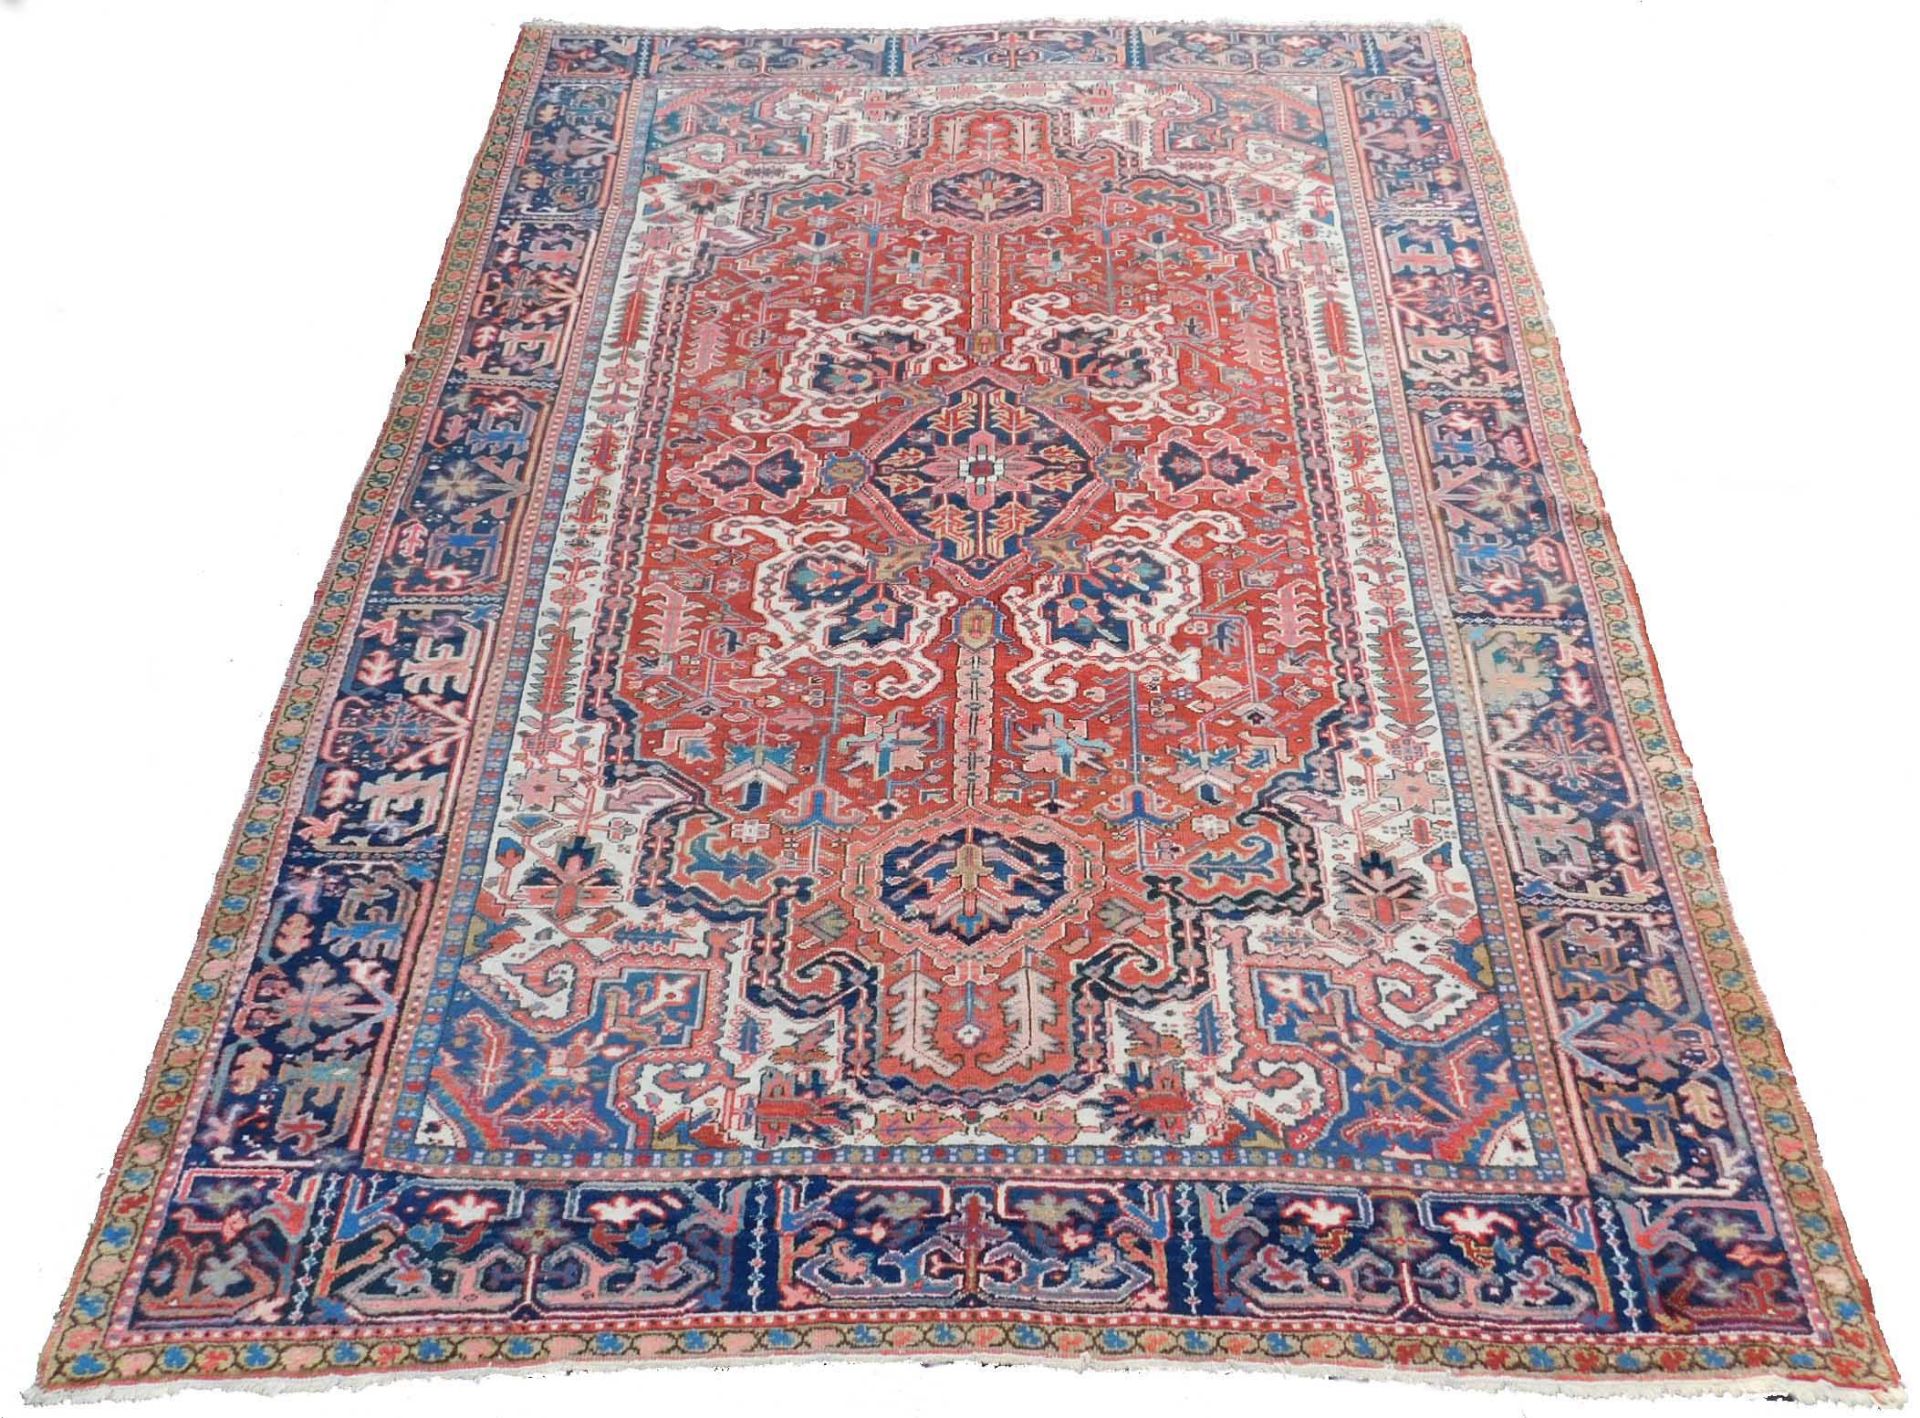 Heriz Persian carpet. Iran. Around 90 years old.